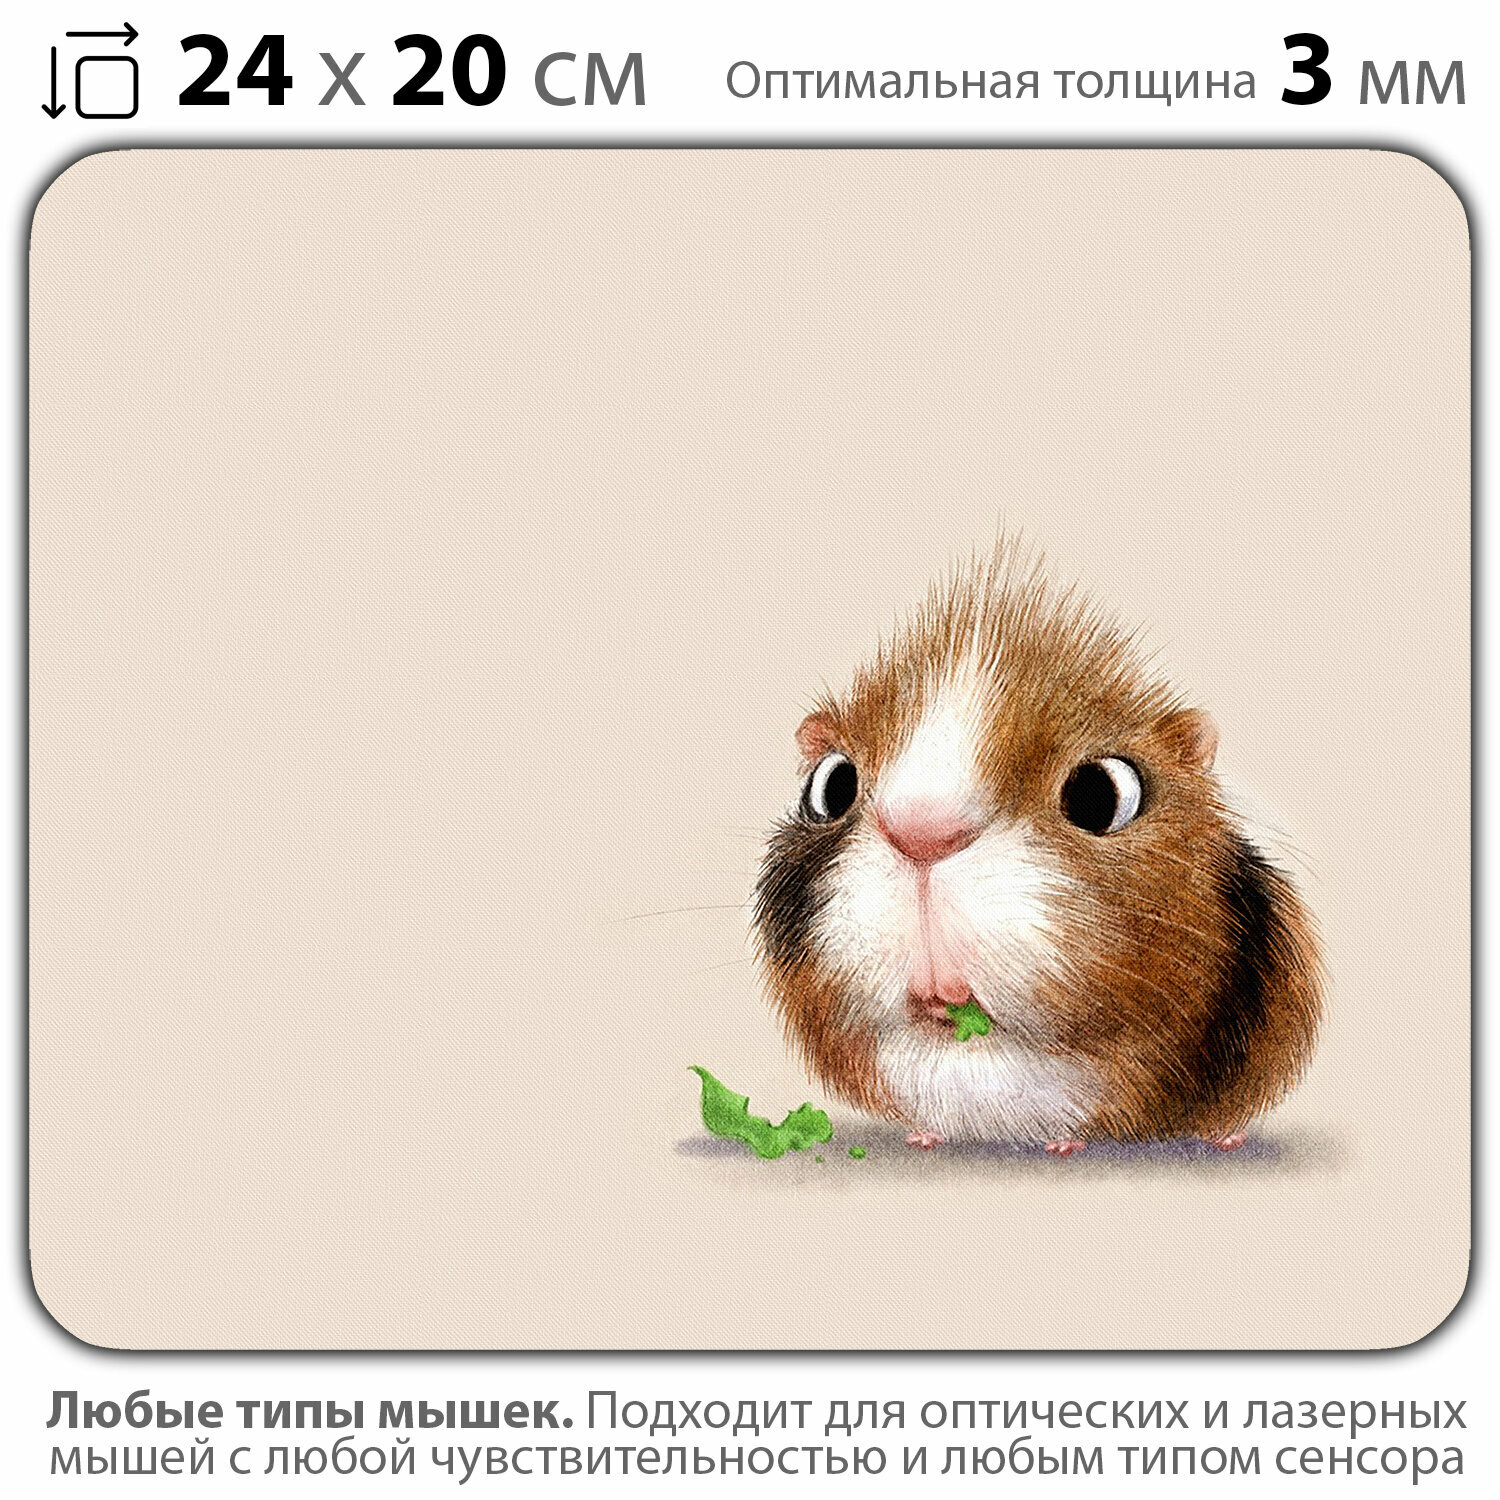 Коврик для мыши "Милый хомячок" (24 x 20 см x 3 мм)